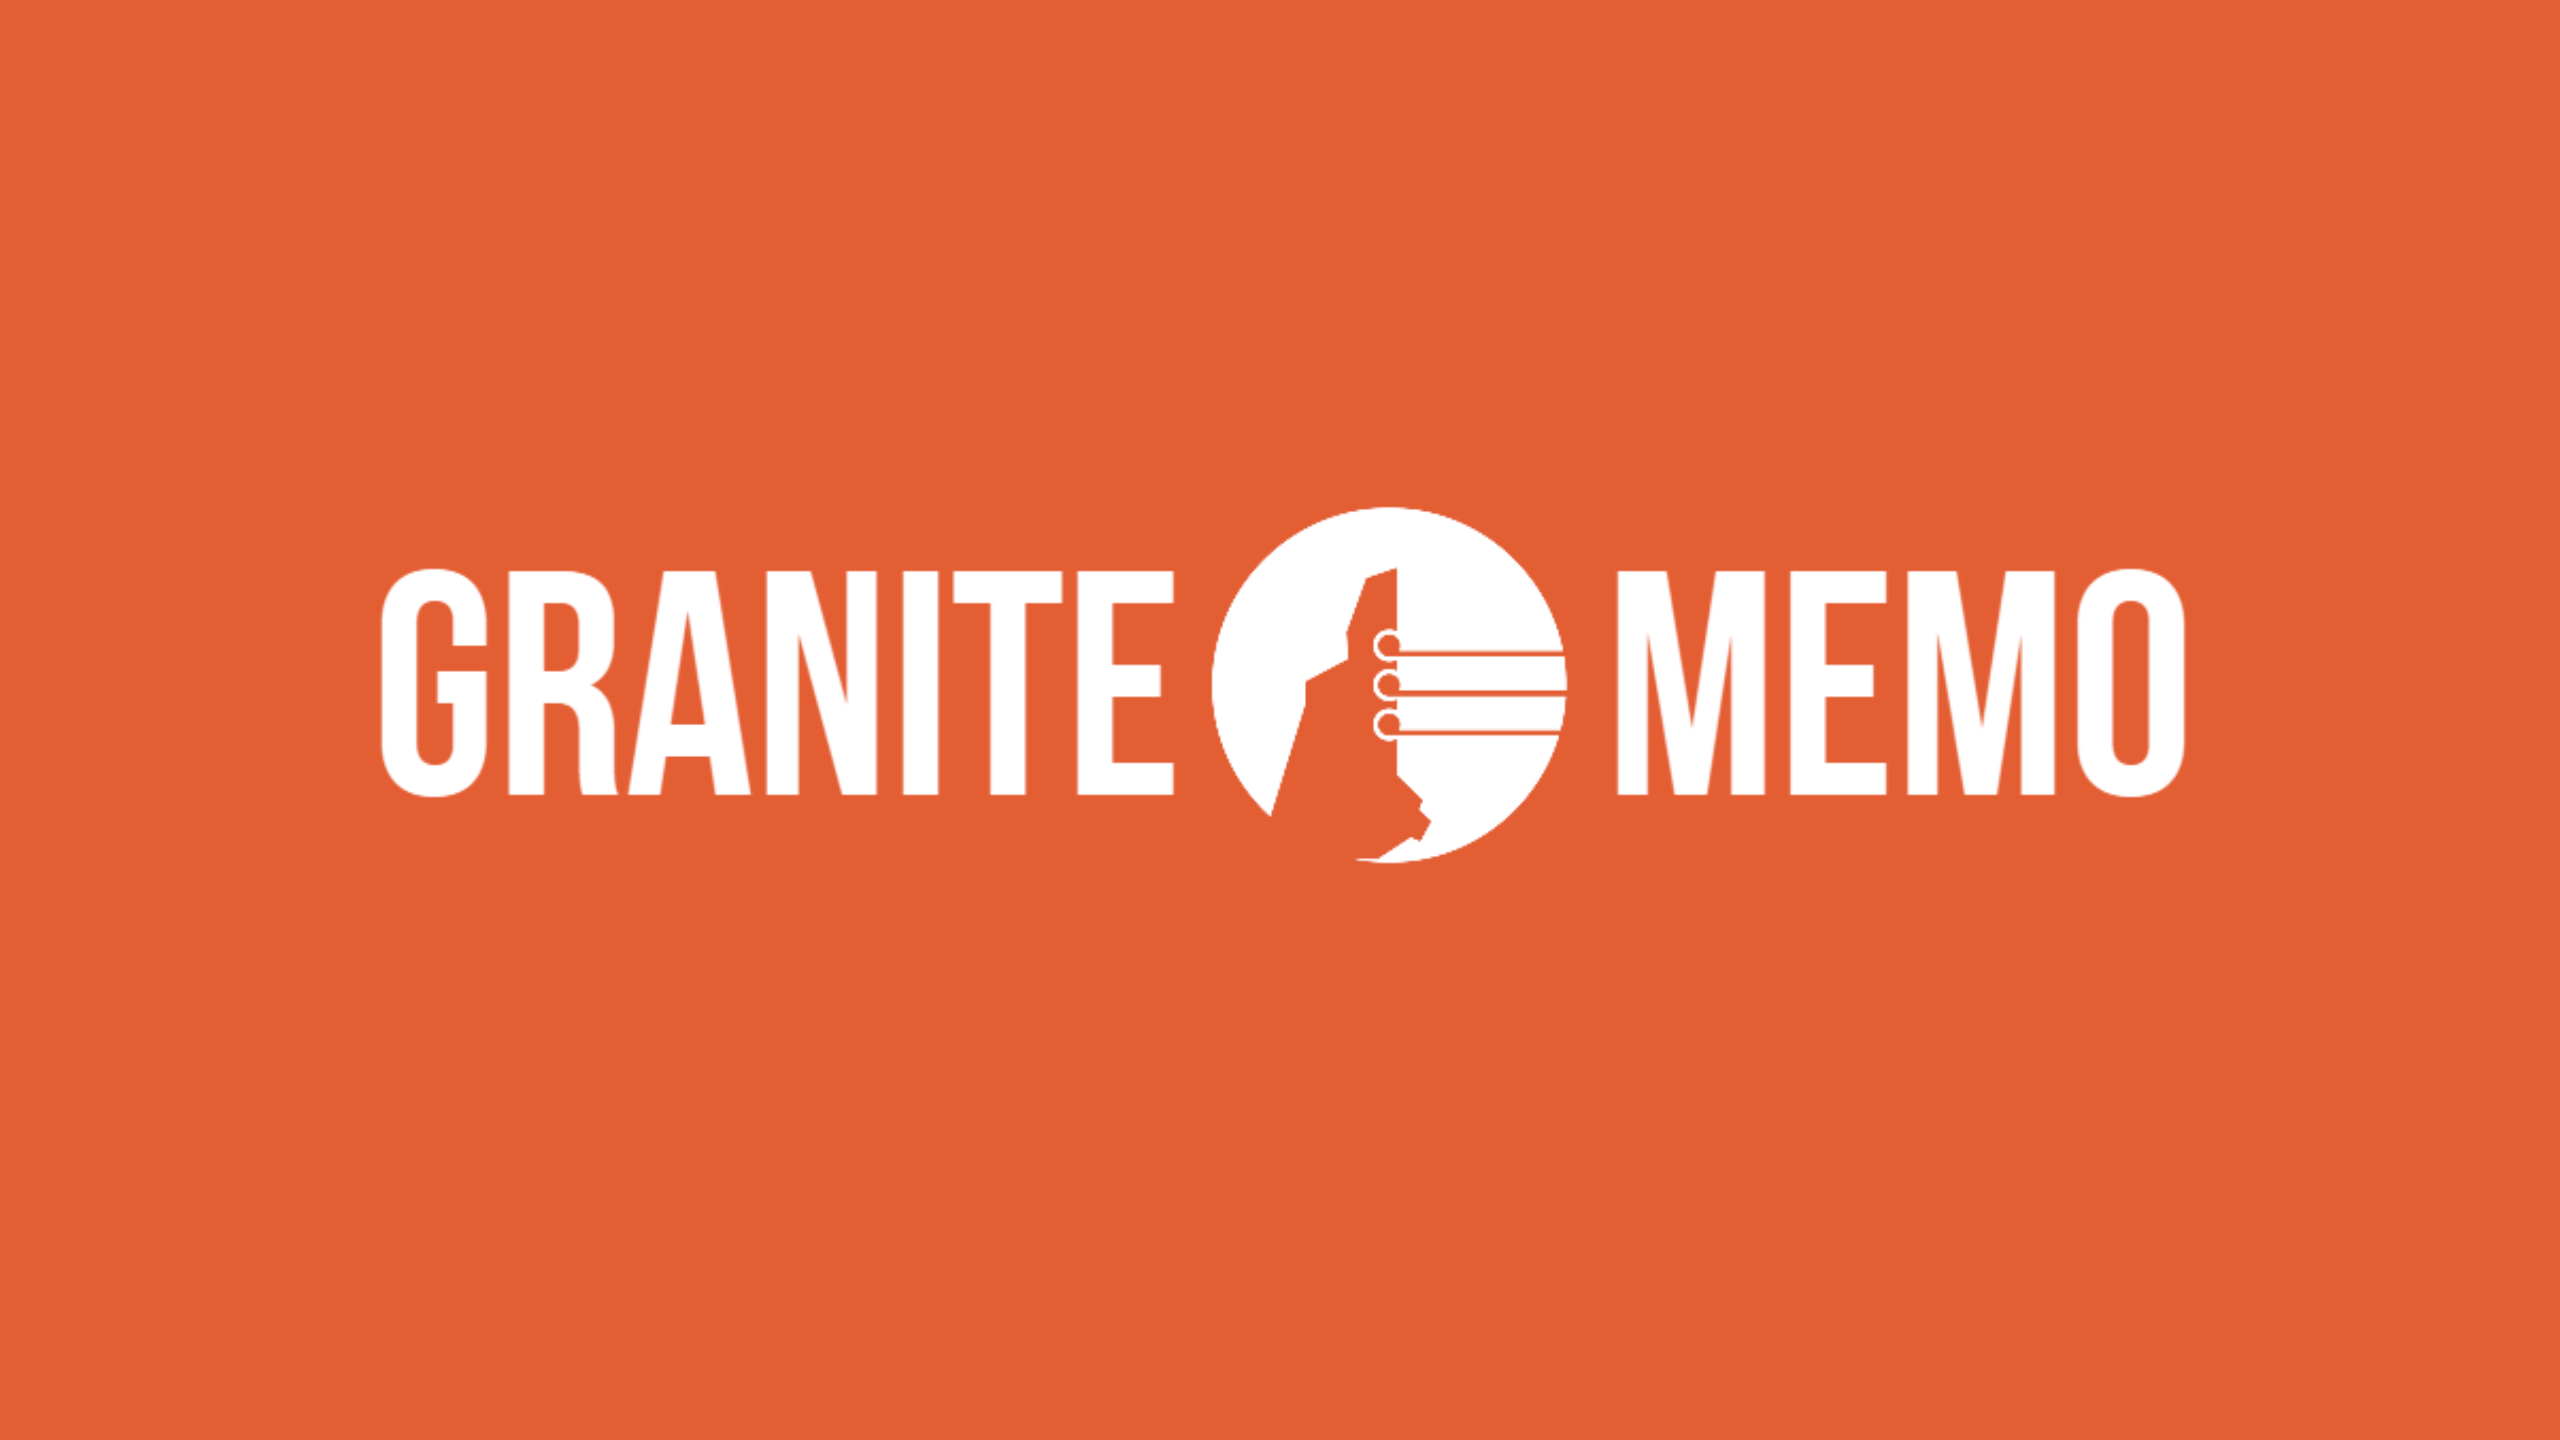 Why I'm launching Granite Memo